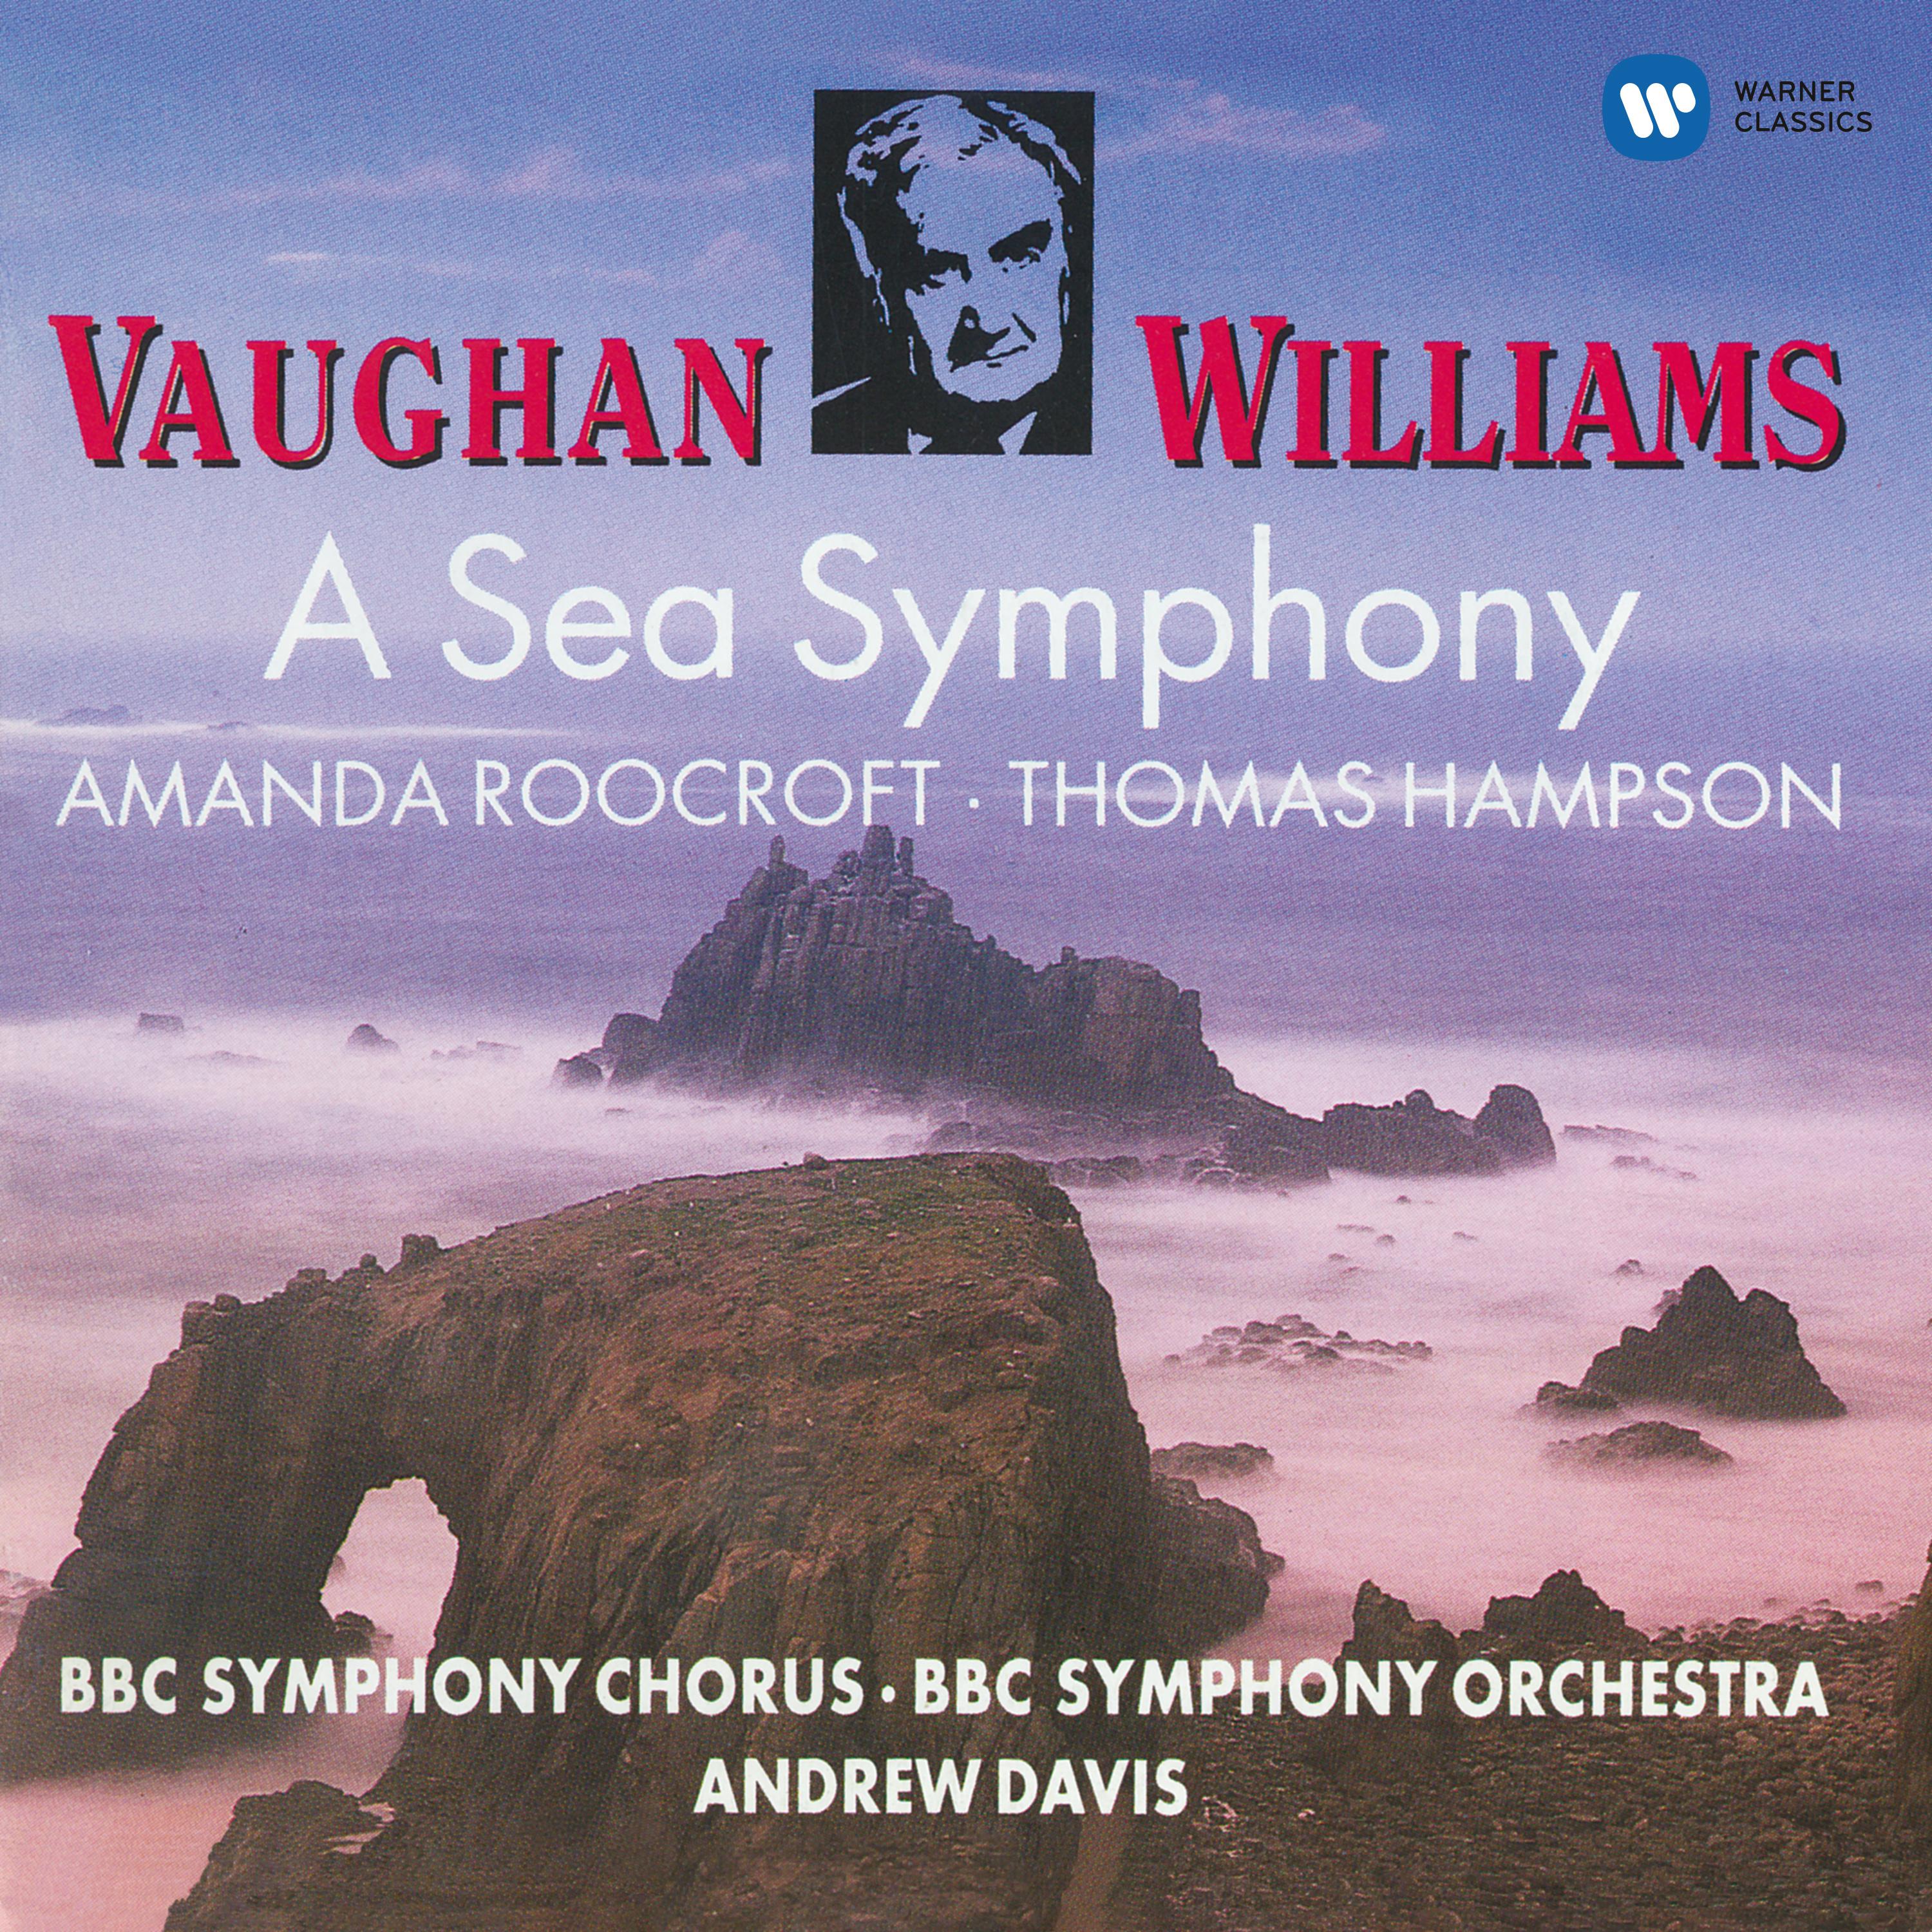 Vaughan Williams: Symphony No. 1 "A Sea Symphony"